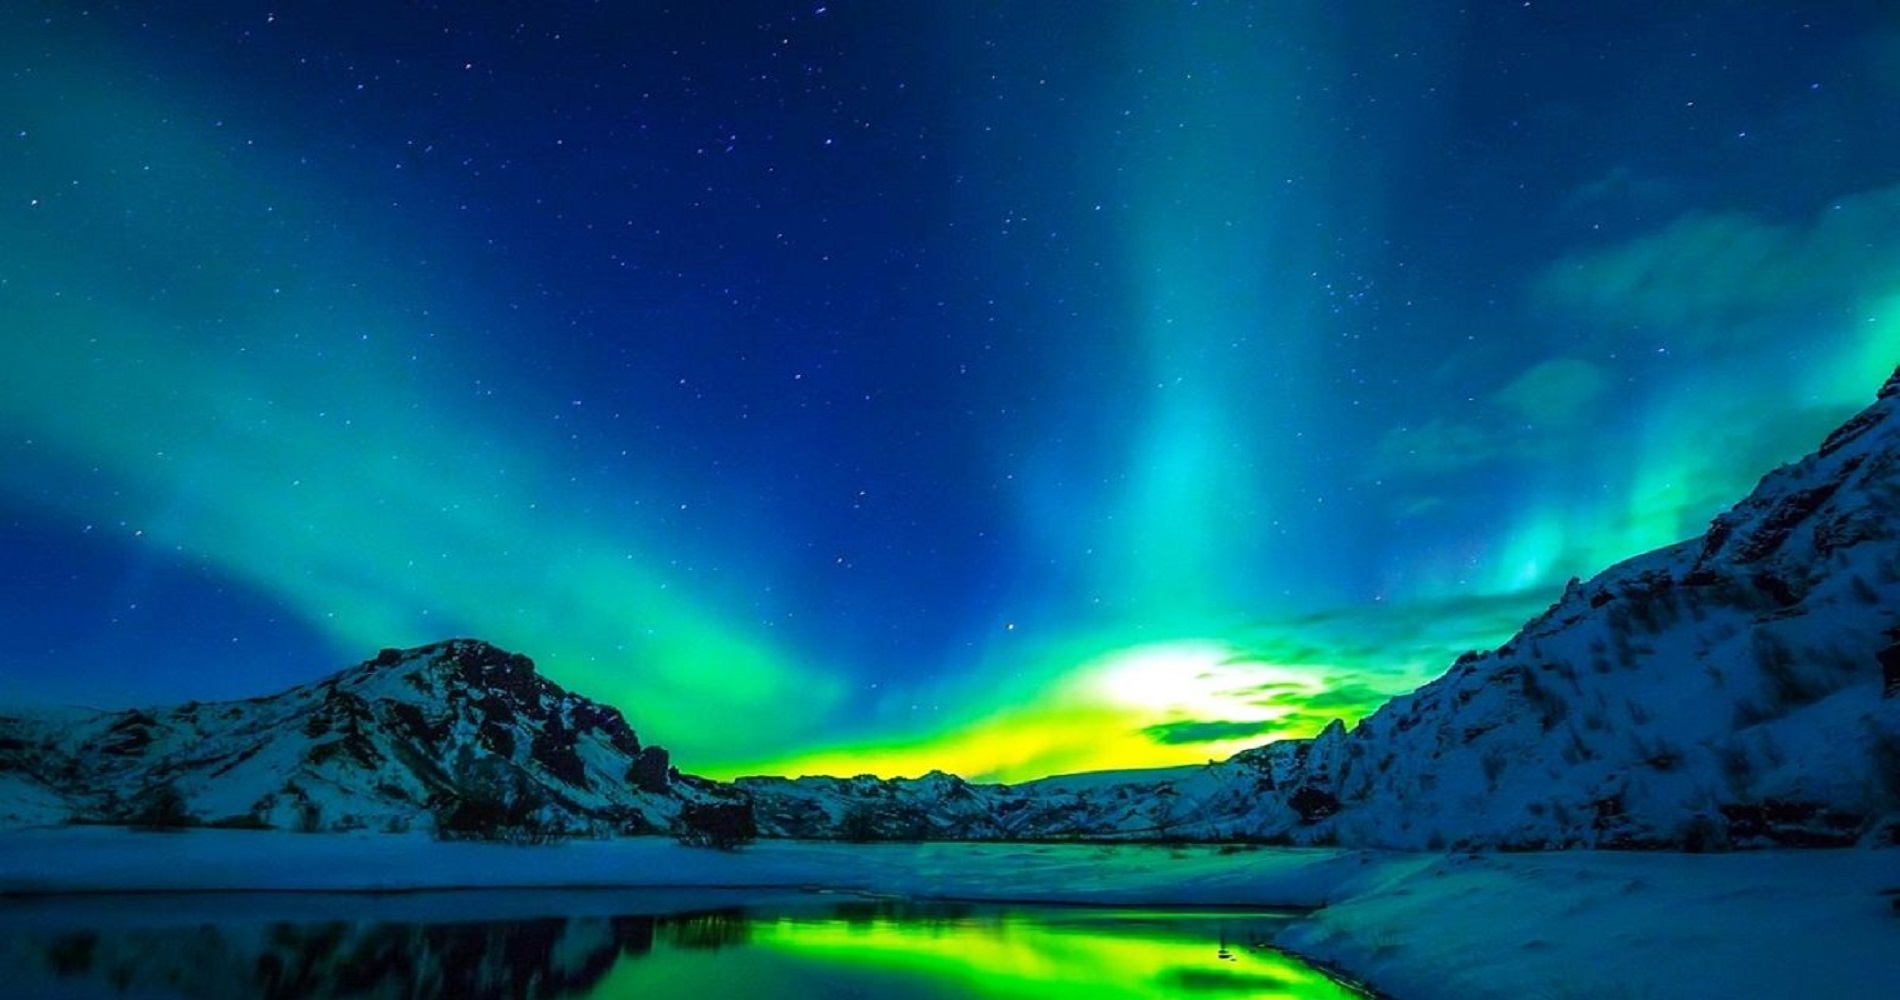 Background Image - Iceland